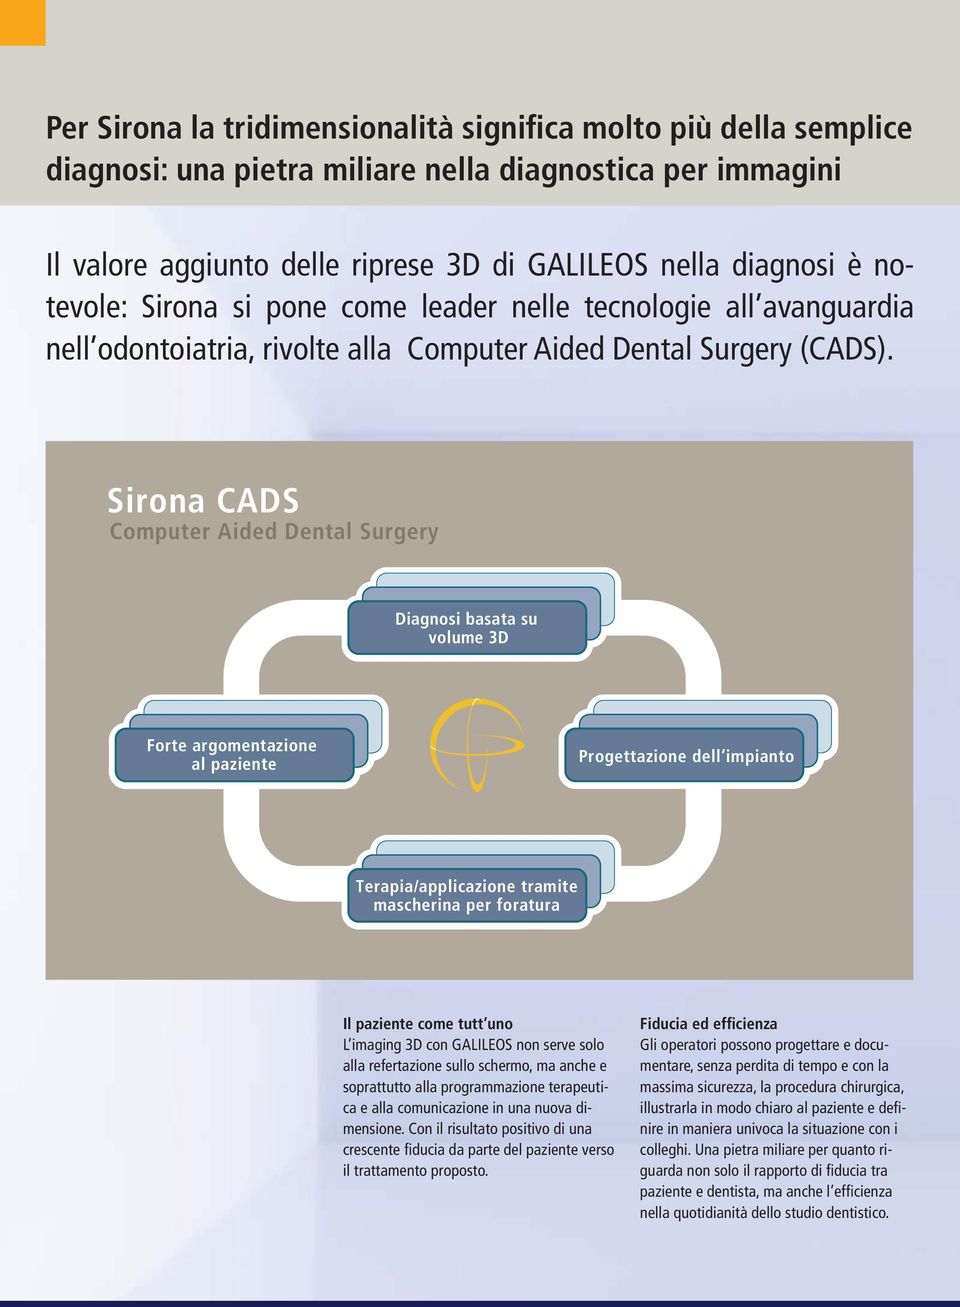 Sirona CADS Computer Aided Dental Surgery Diagnosi basata su volume 3D Forte argomentazione al paziente Progettazione dell impianto Terapia/applicazione tramite mascherina per foratura Il paziente